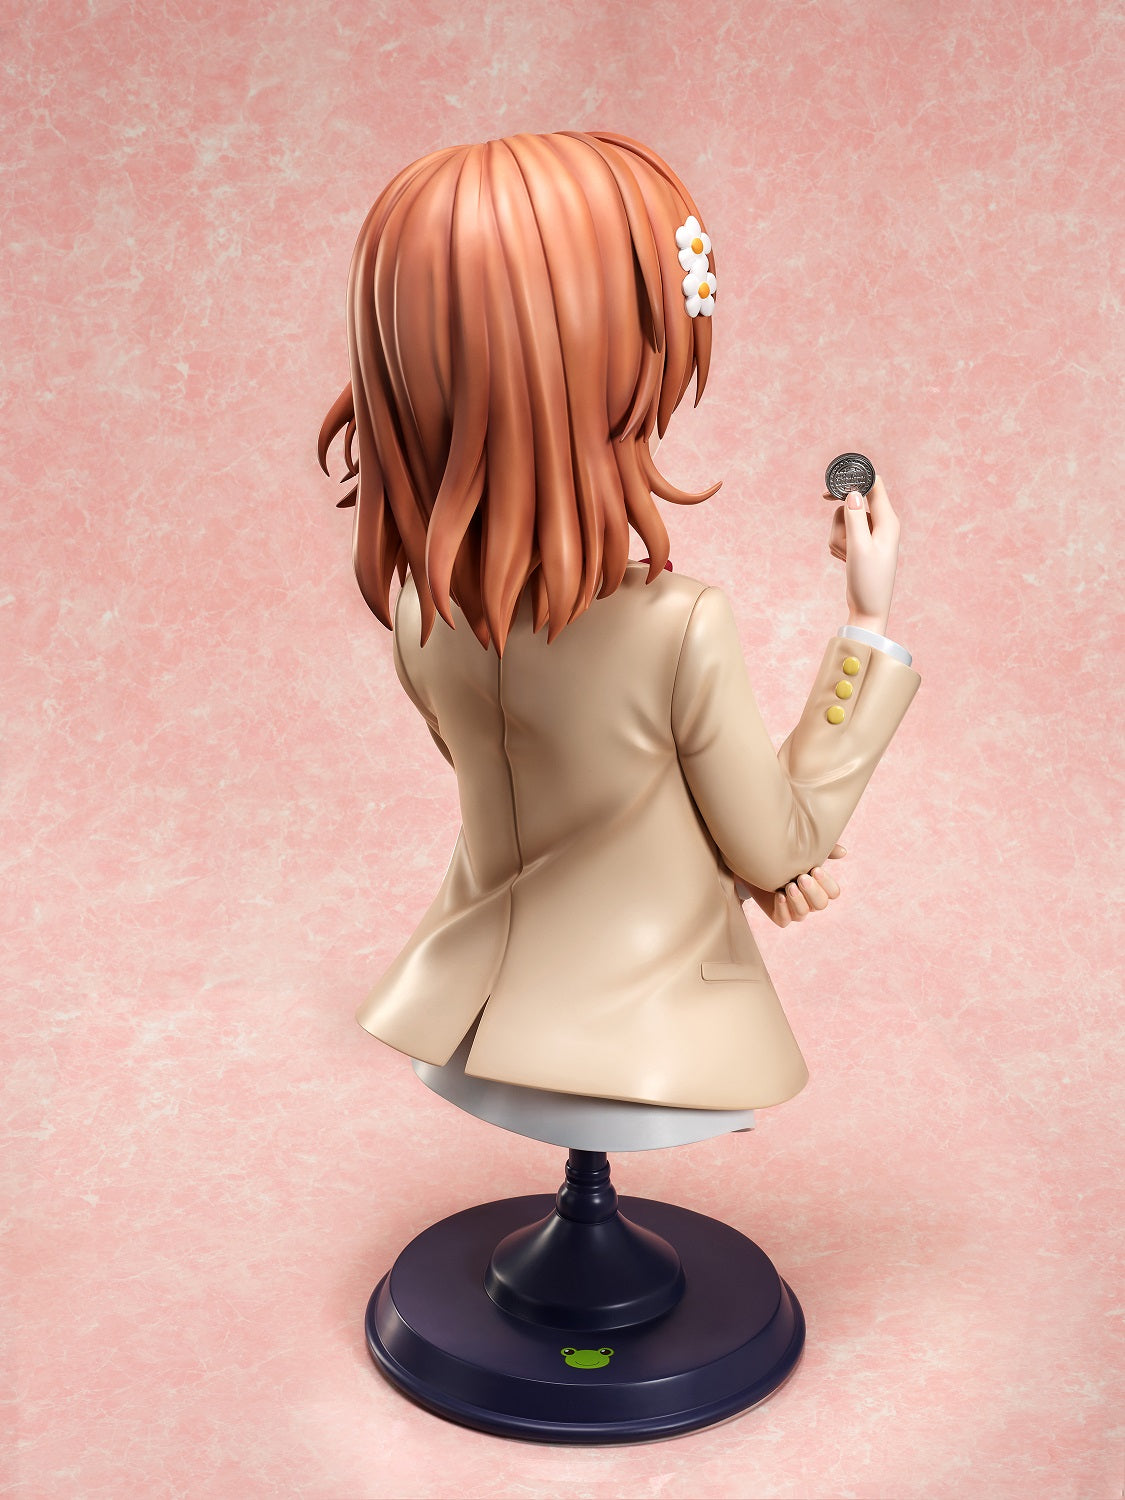 Mikoto Misaka 1/1 Scale Bust Figure